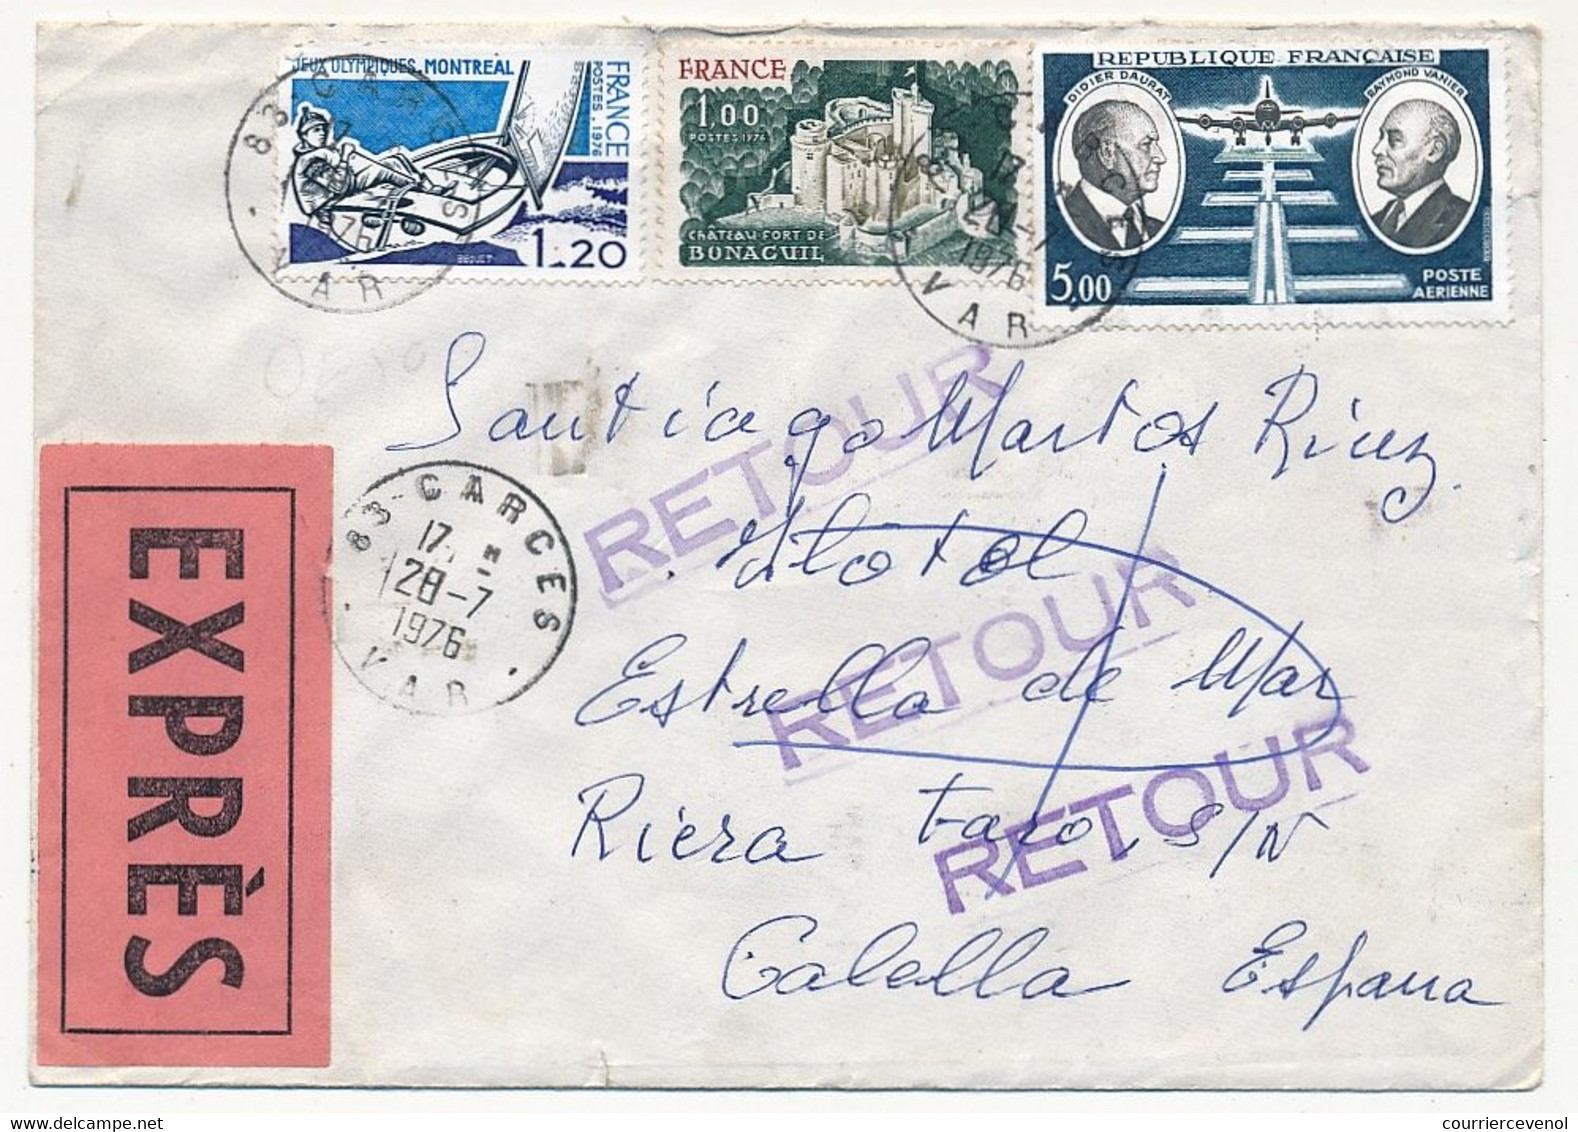 FRANCE - Enveloppe Pour Espagne - EXPRÈS - Affranchissement Composé Depuis GARCES 1976 - Lettres & Documents